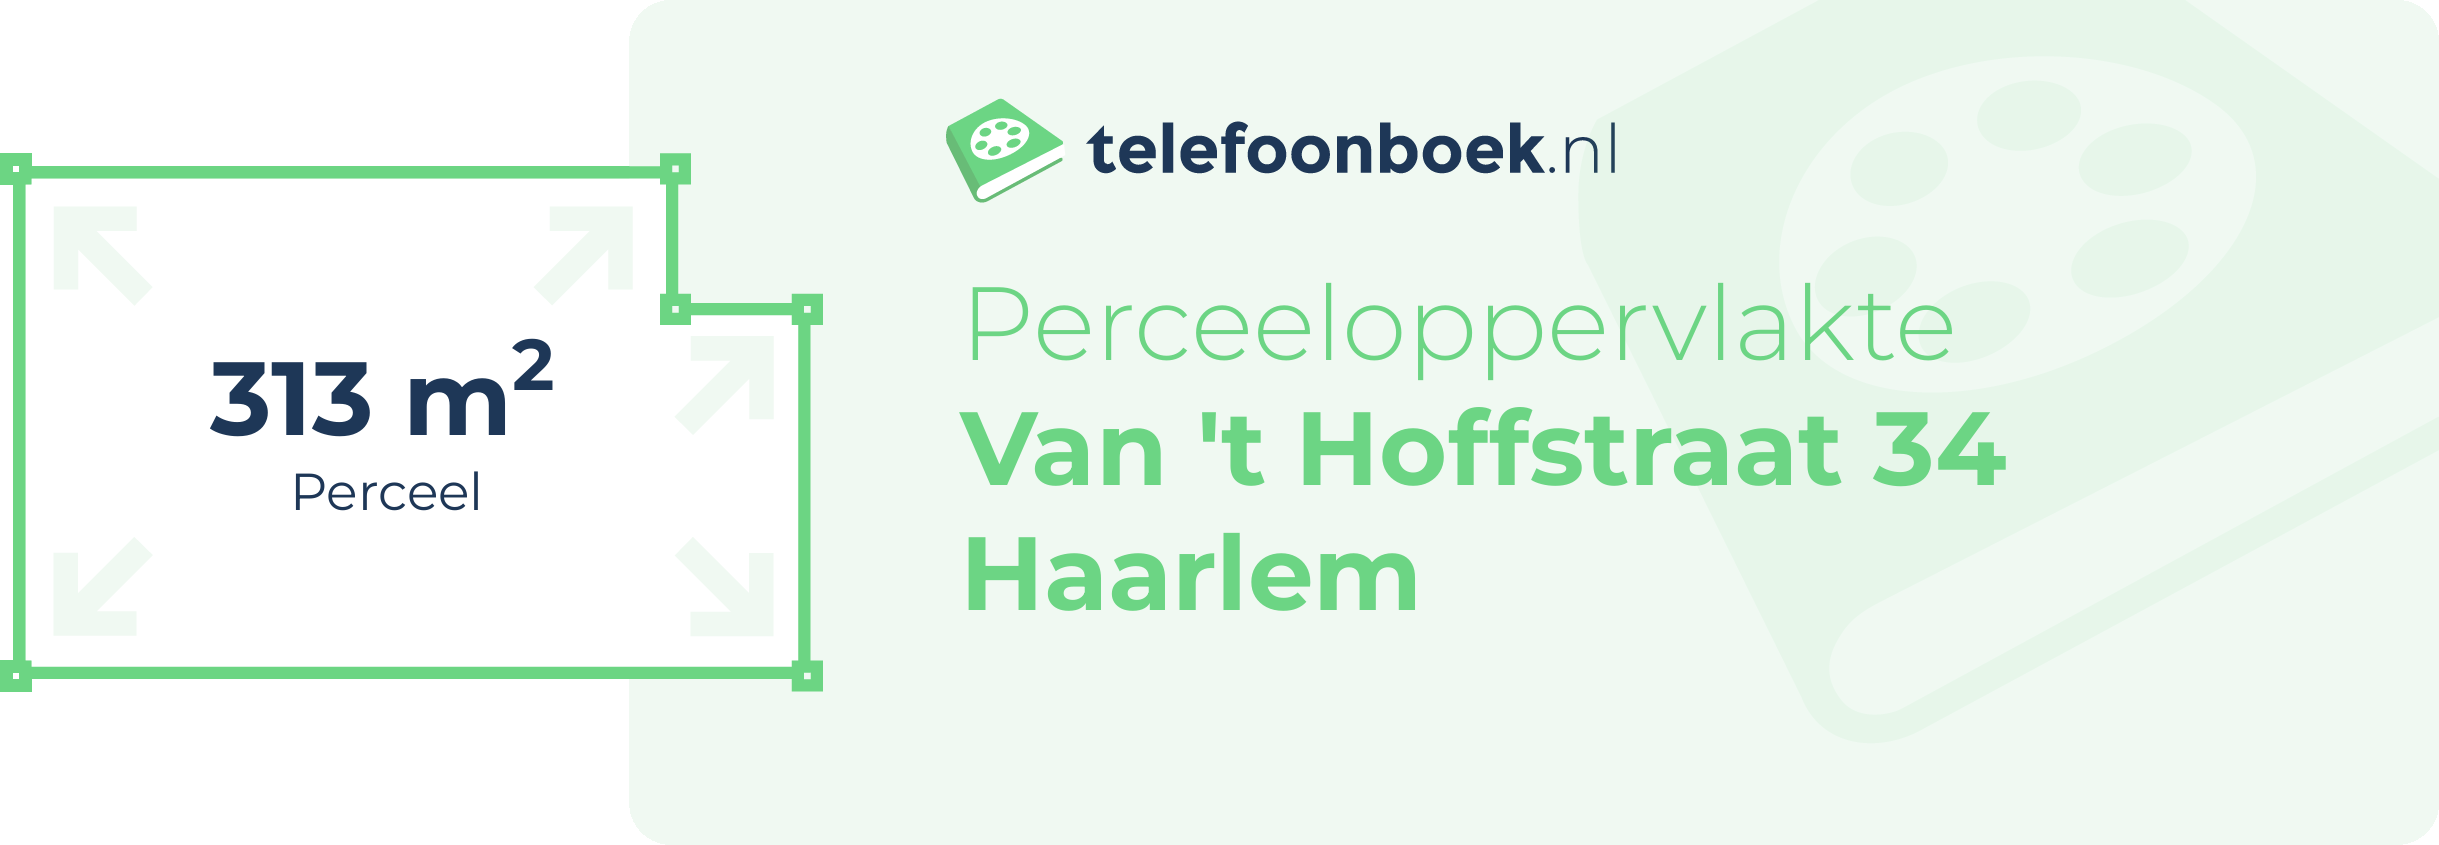 Perceeloppervlakte Van 't Hoffstraat 34 Haarlem